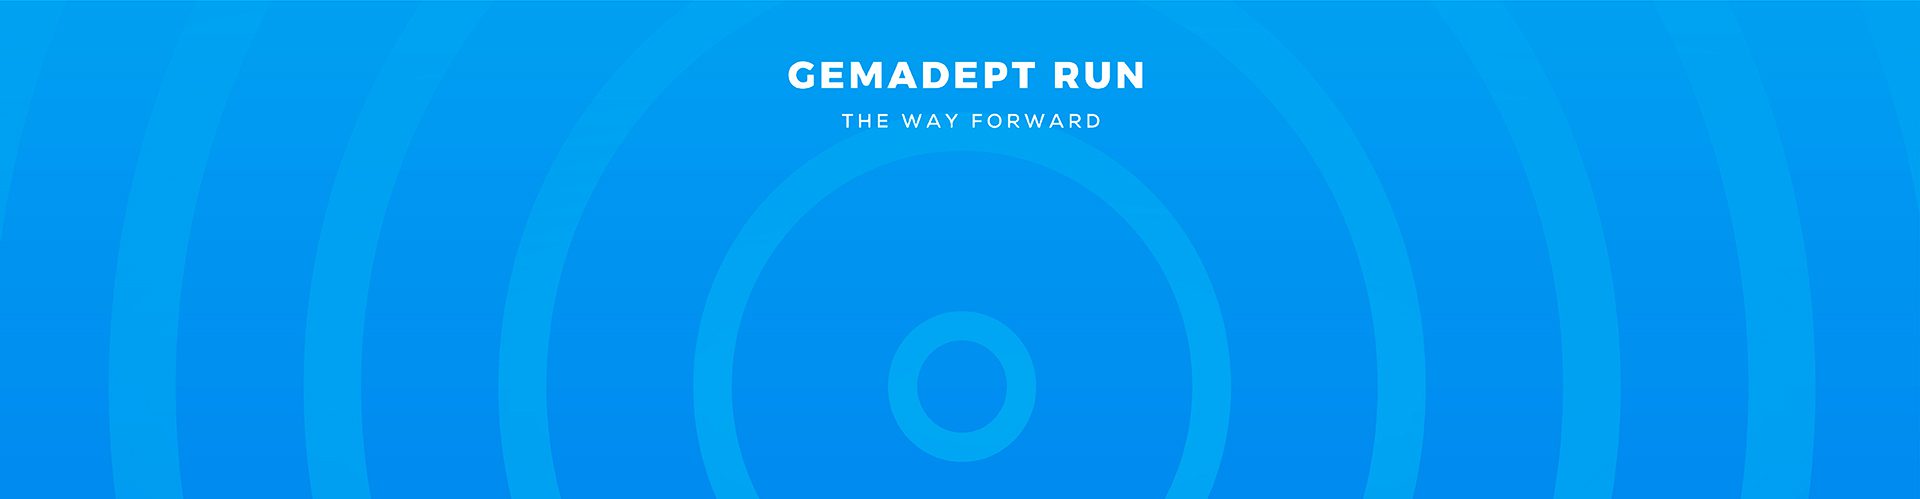 Cách đăng ký giải chạy Gemadept Run như thế nào?